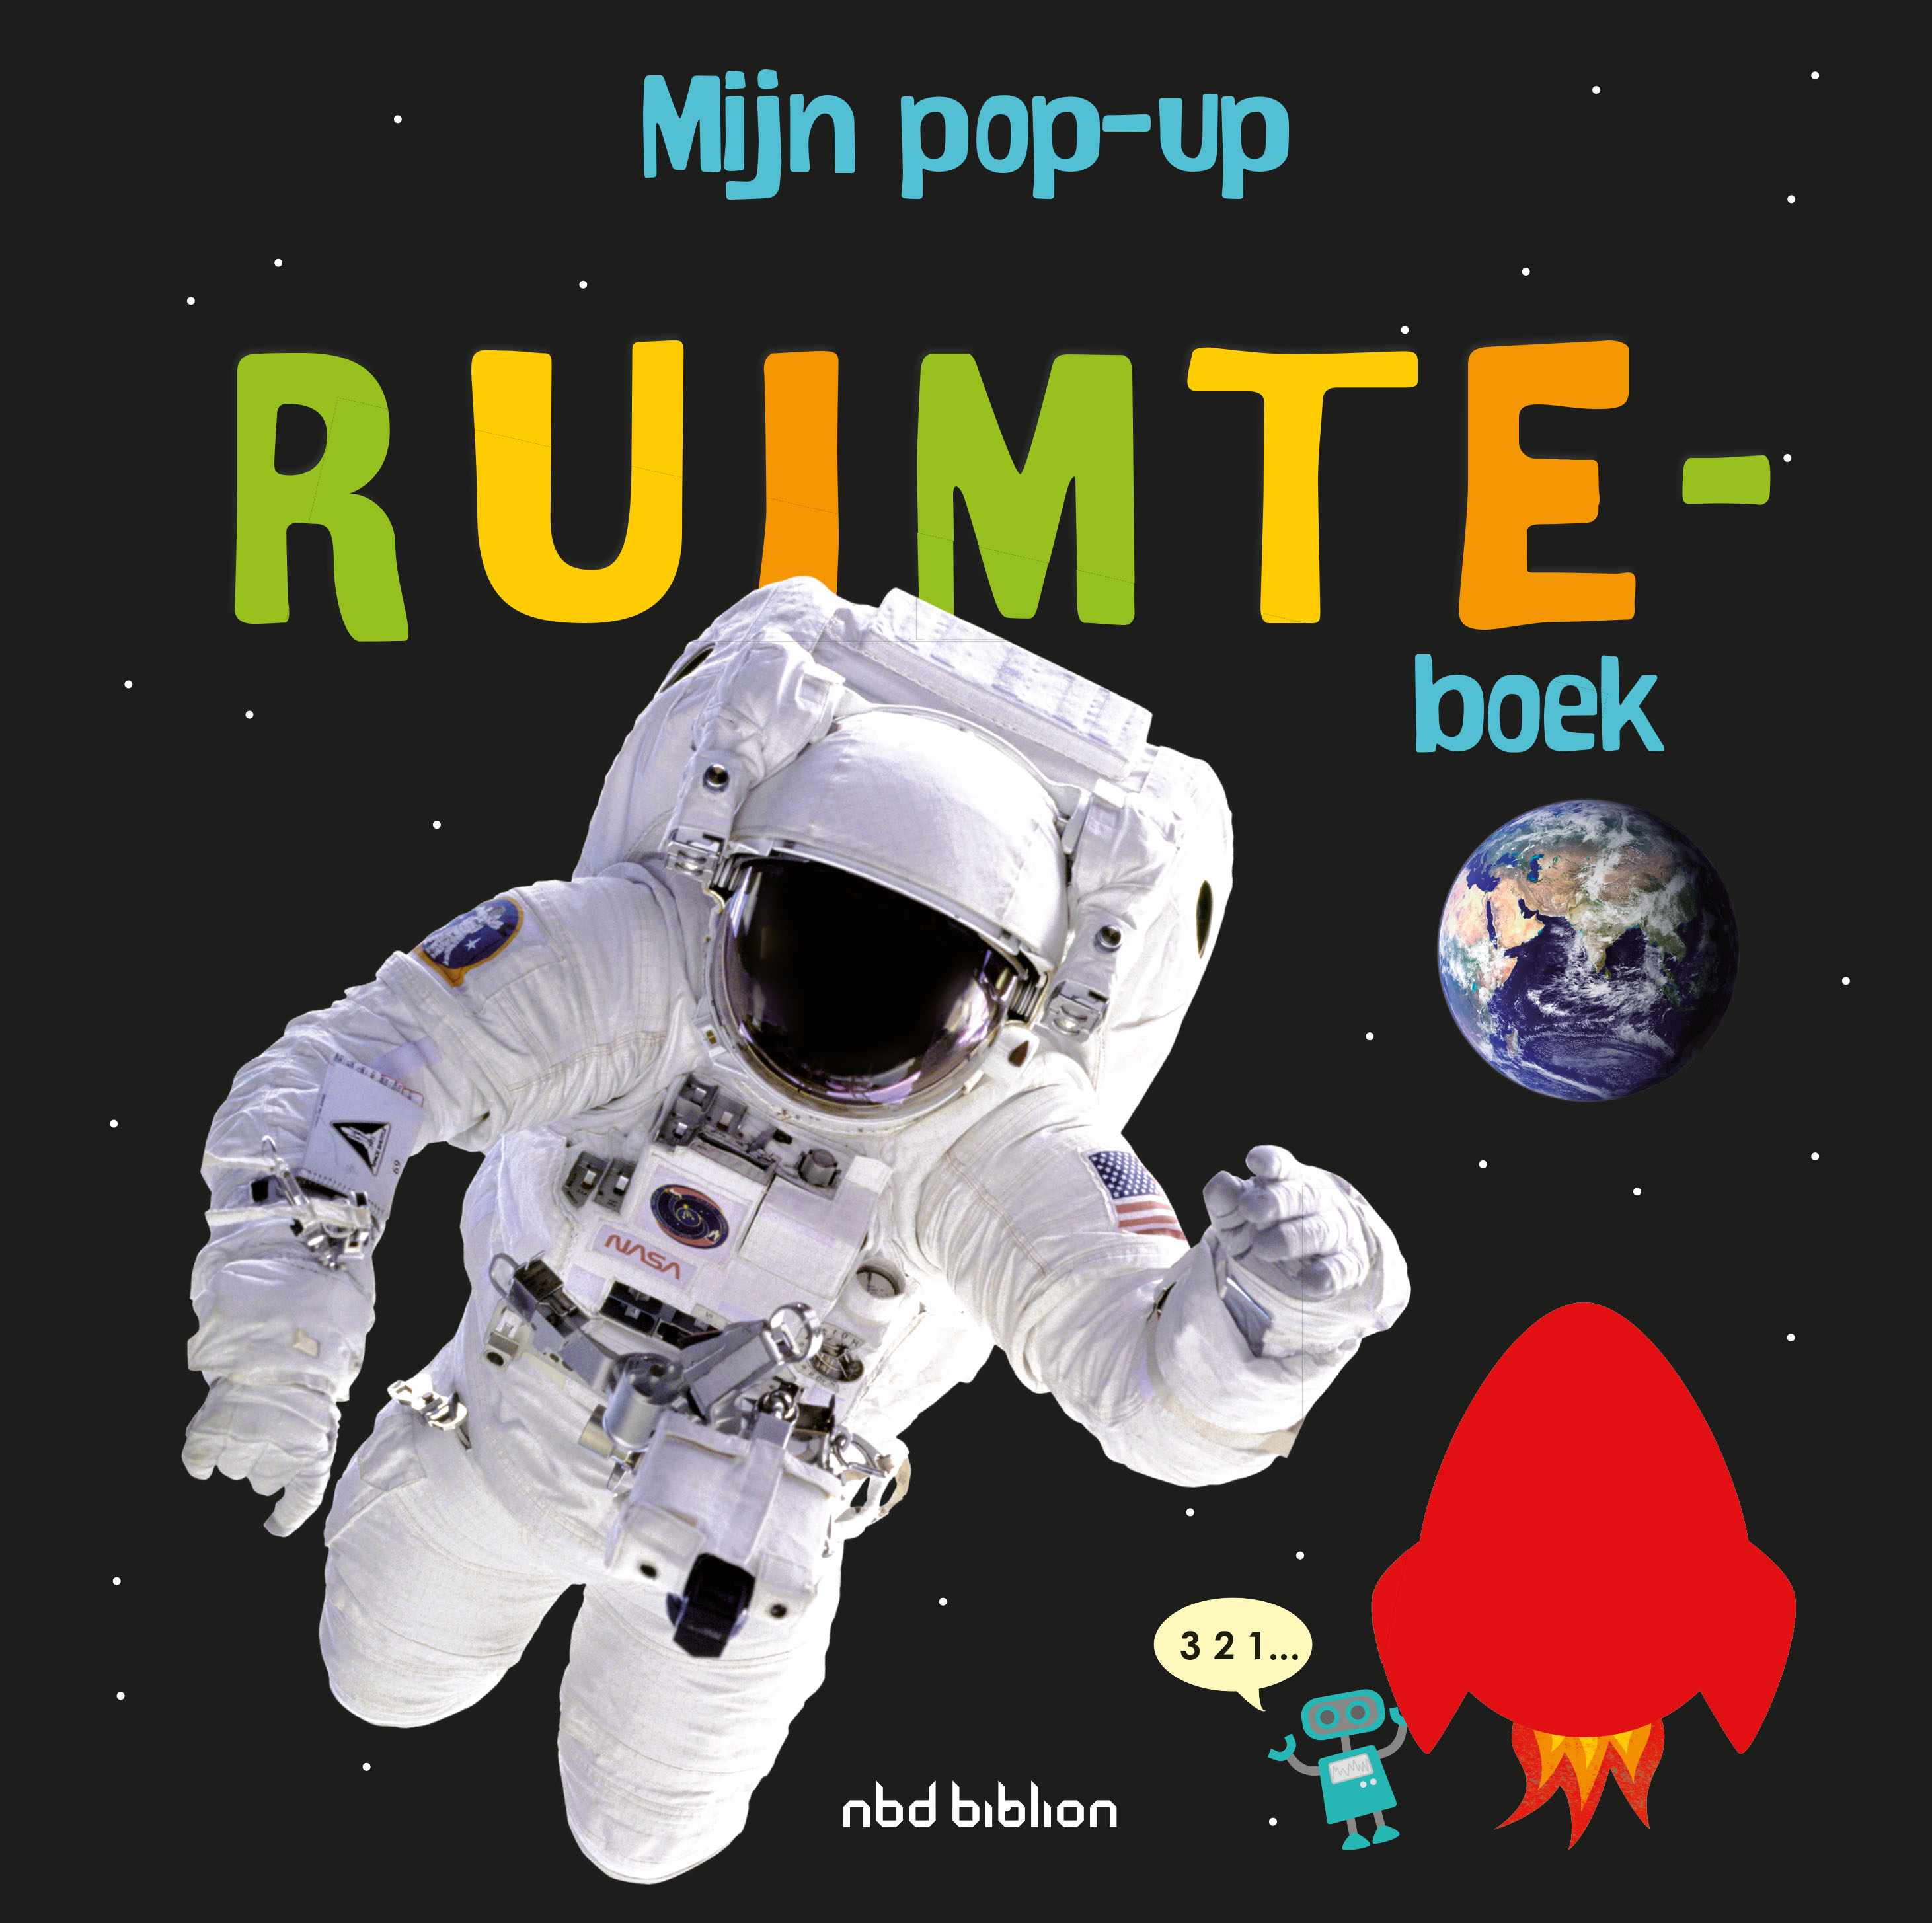 BNBPOP001 Mijn pop-up ruimteboek